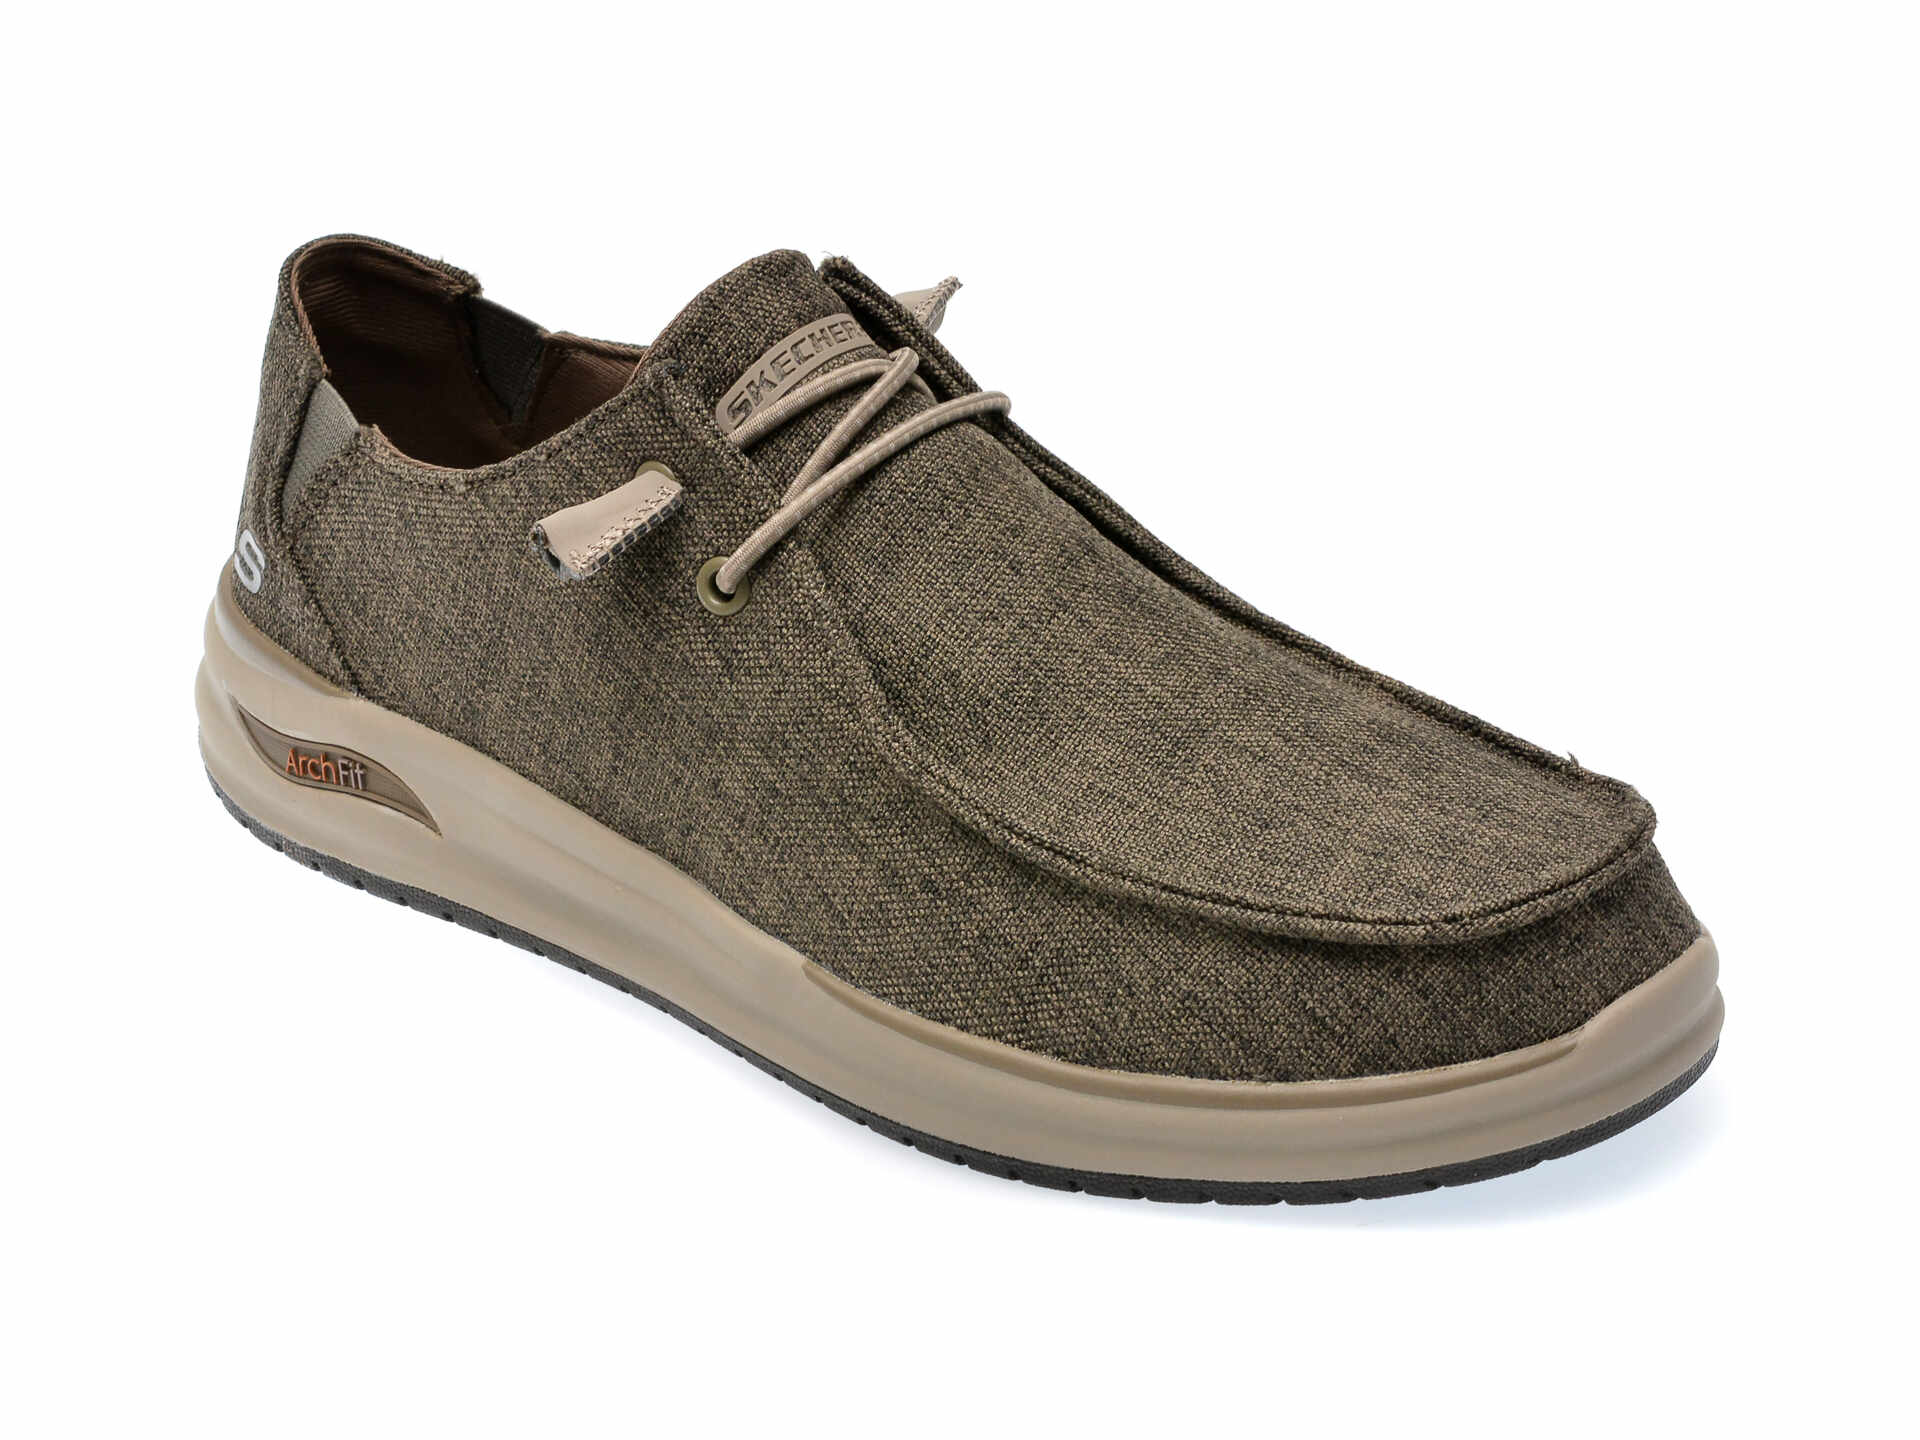 Pantofi SKECHERS gri, ARCH FIT, din material textil